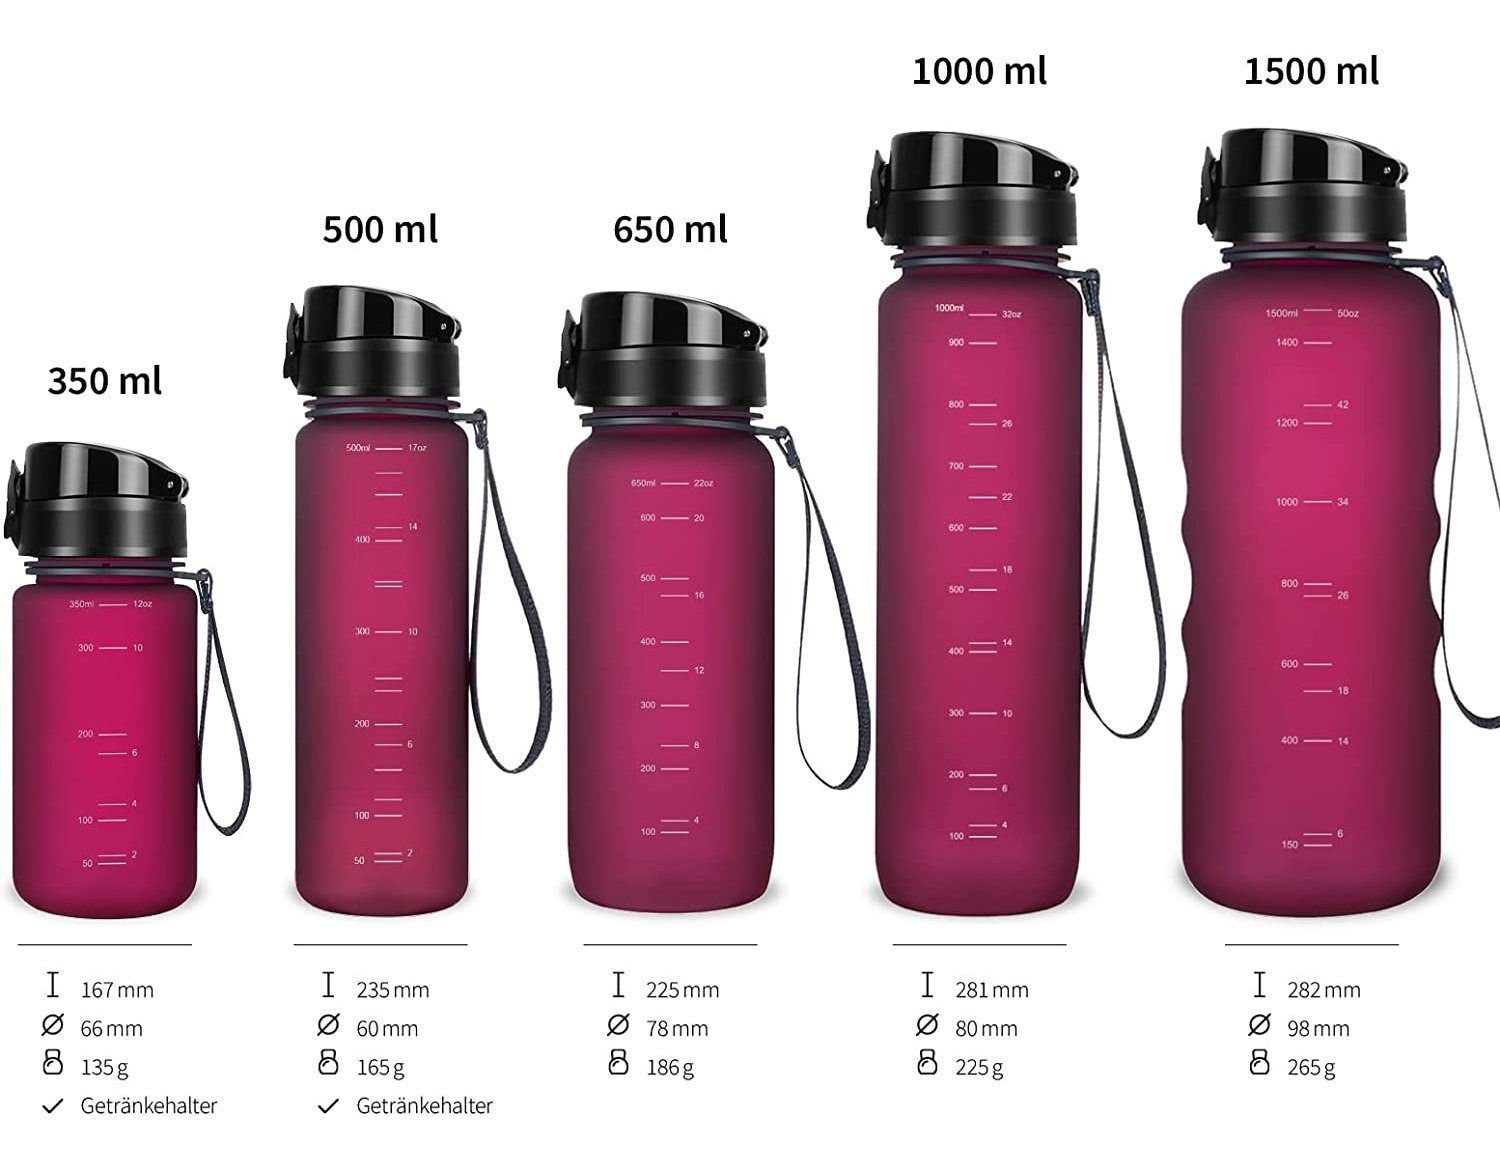 720°DGREE Trinkflasche liter, für Sportflasche Schule, Früchtebehälter, rose 1,5 Outdoor, und Sport l uberBottle auslaufsicher Fahrrad mit Wasserflasche 500ml,650ml,1